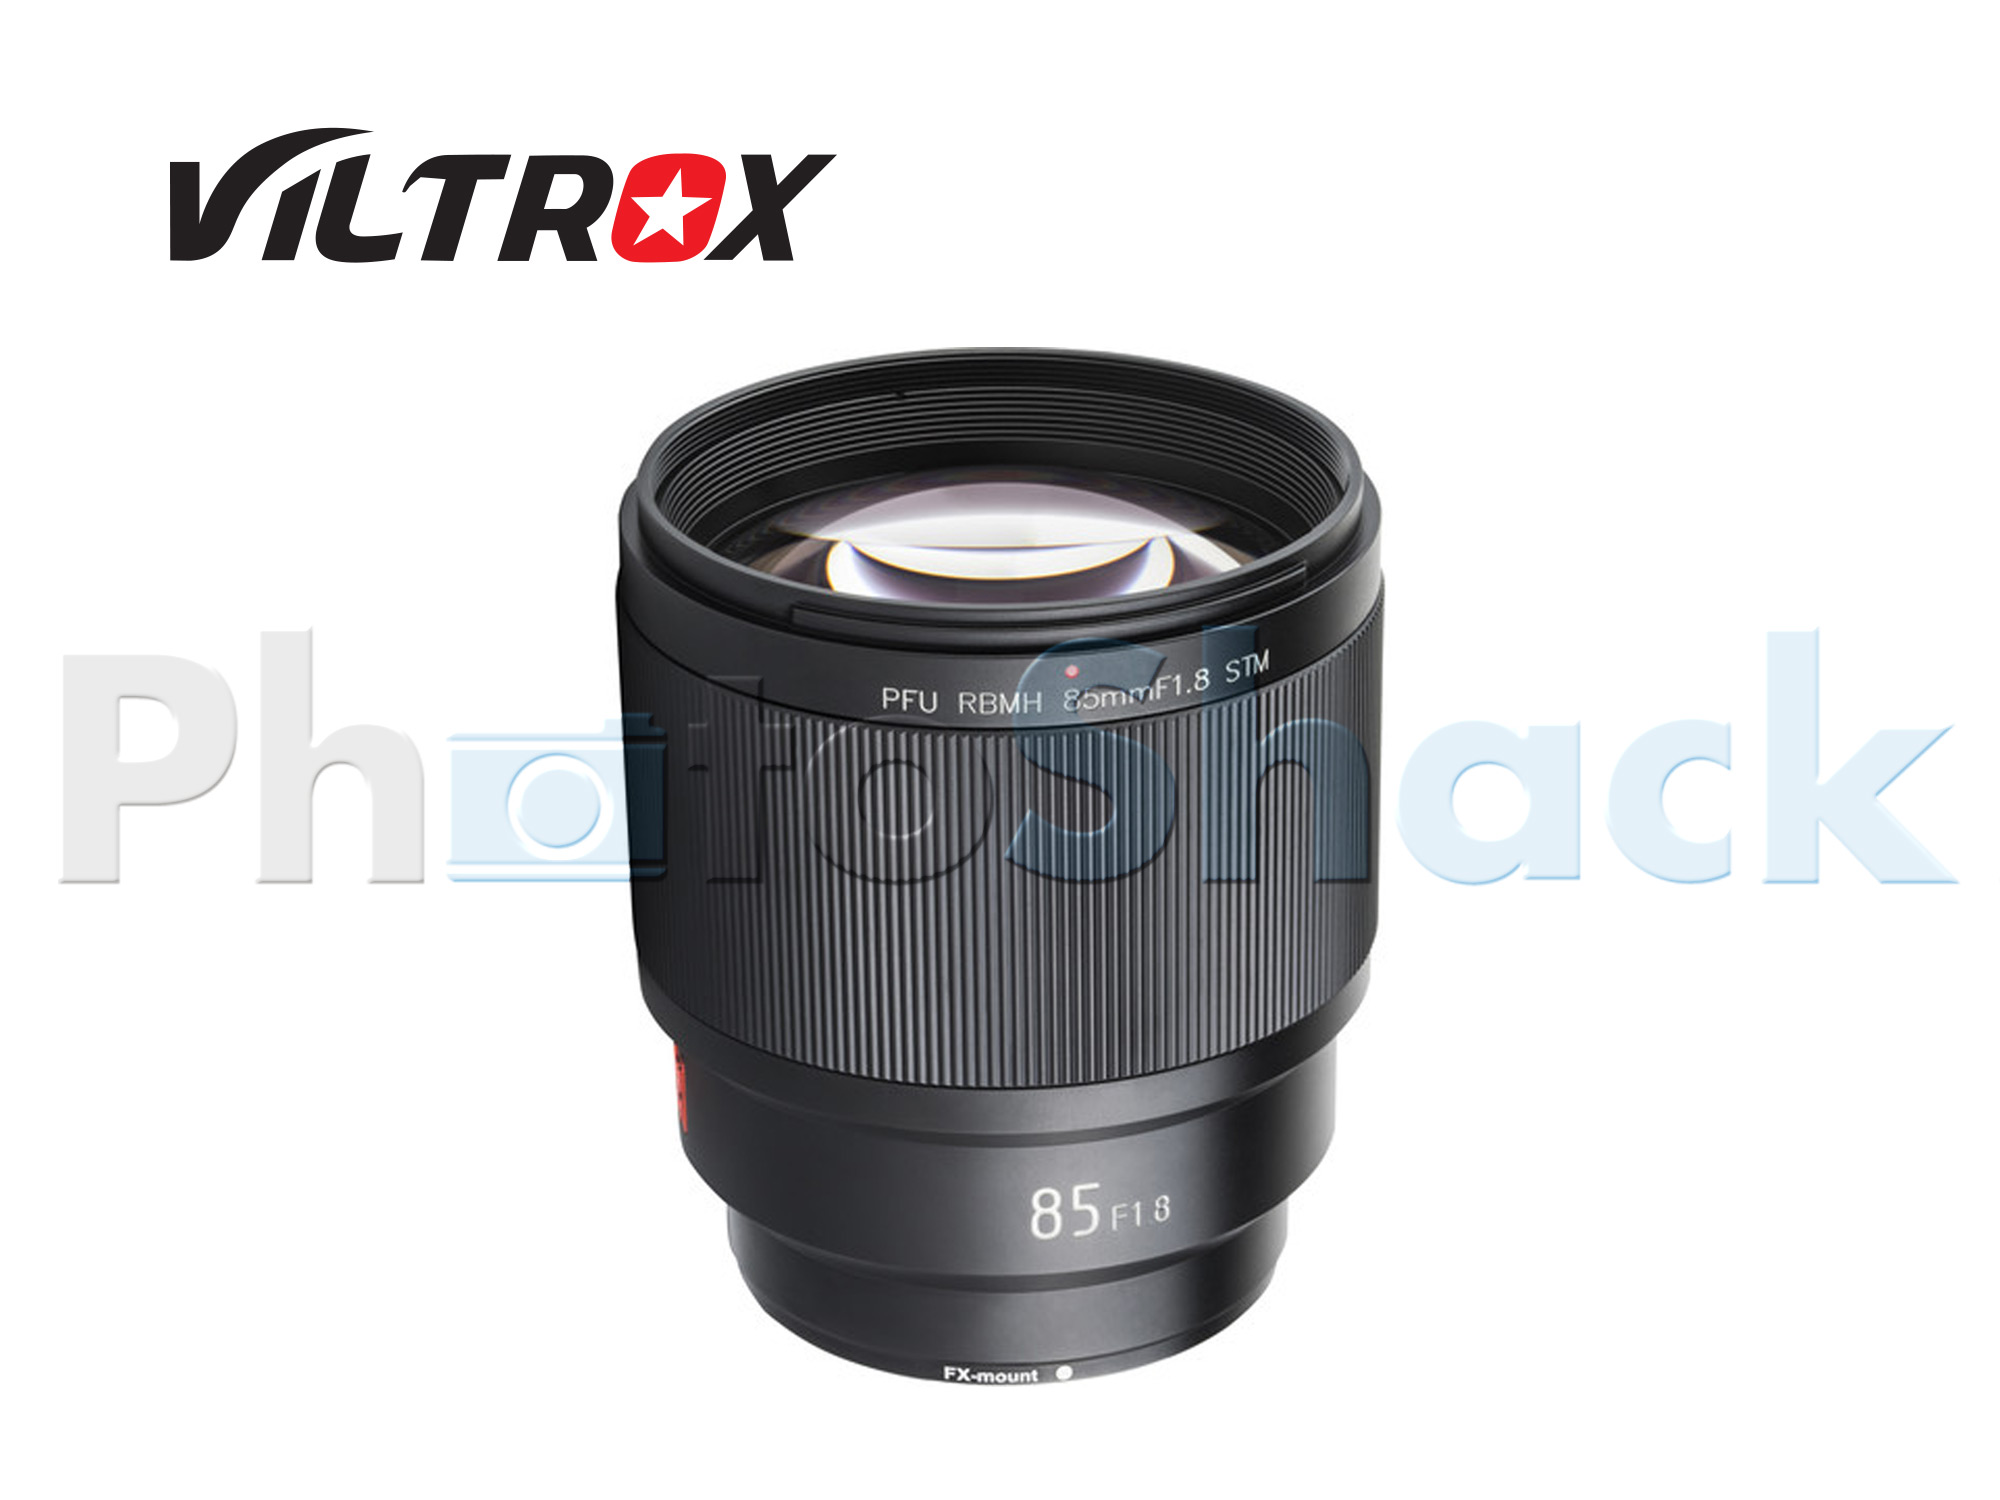 Viltrox Fuji 85mm f/1.8 STM Lens